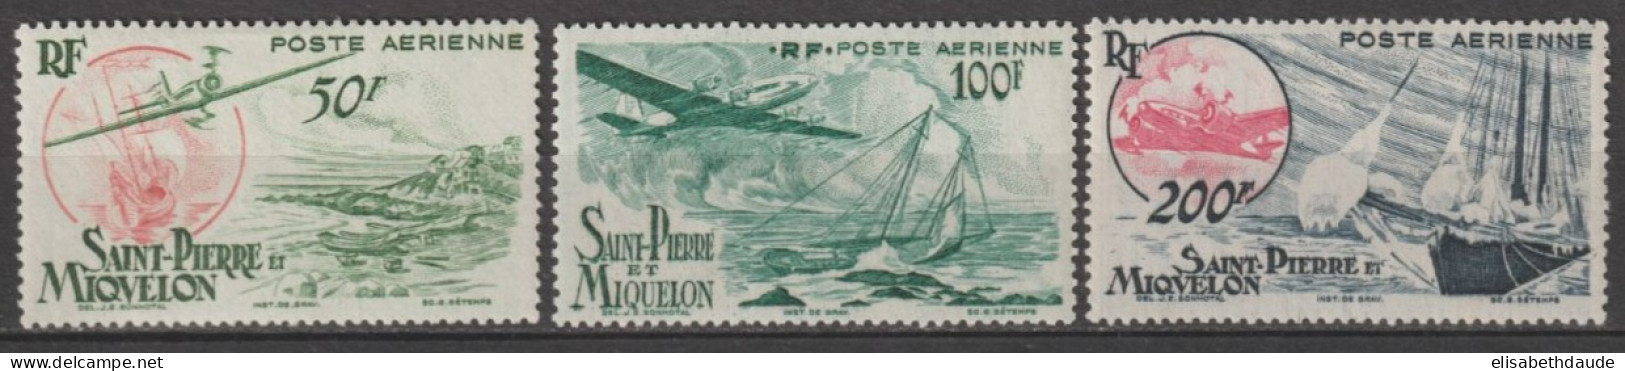 SPM - 1947 - POSTE AERIENNE - SERIE COMPLETE YVERT N° 18/20 * MLH - COTE = 50 EUR. - Unused Stamps